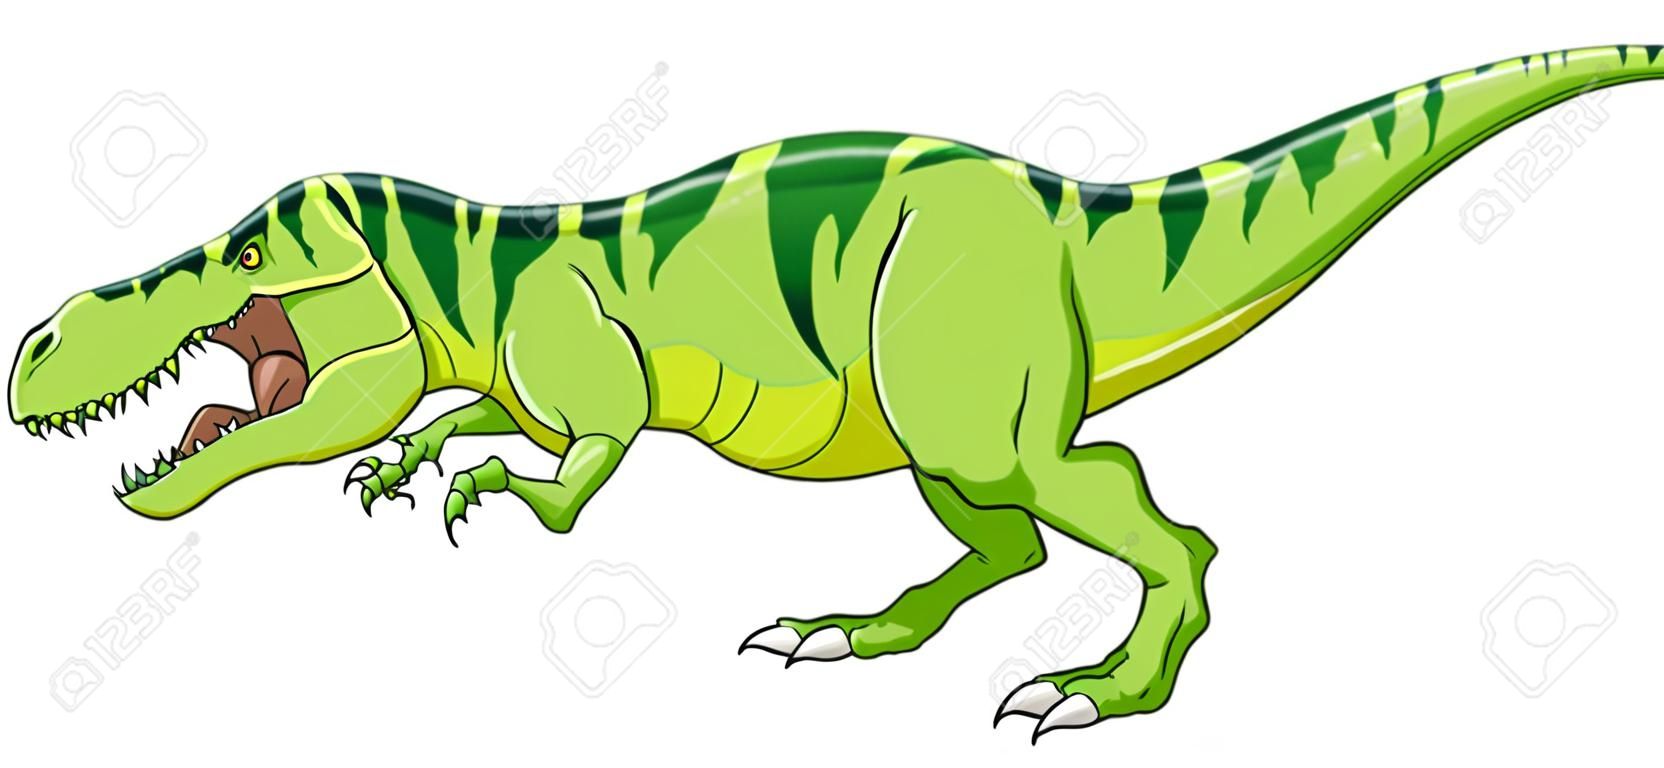 Dinosauro t-rex verde cartone animato che ringhia